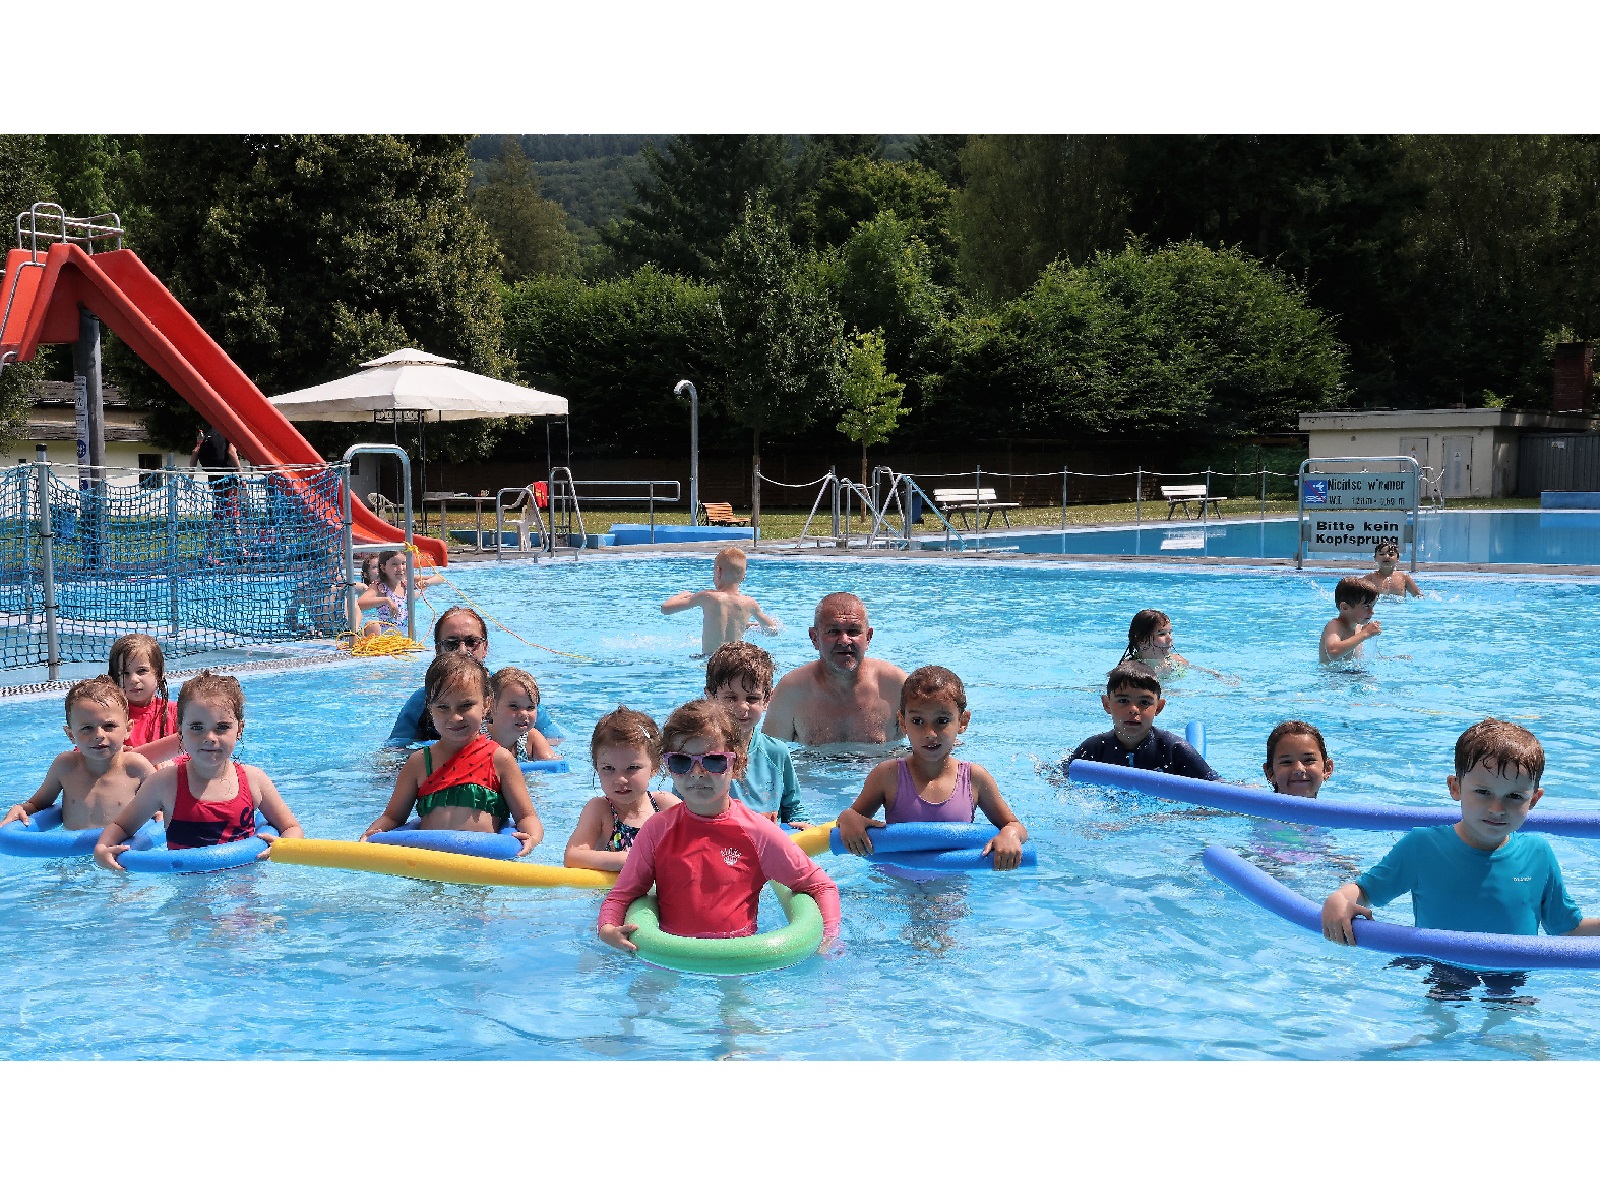 Ferienfreizeit: Groer Andrang auf Seepferdchen-Schwimmkurse in Oberbieber